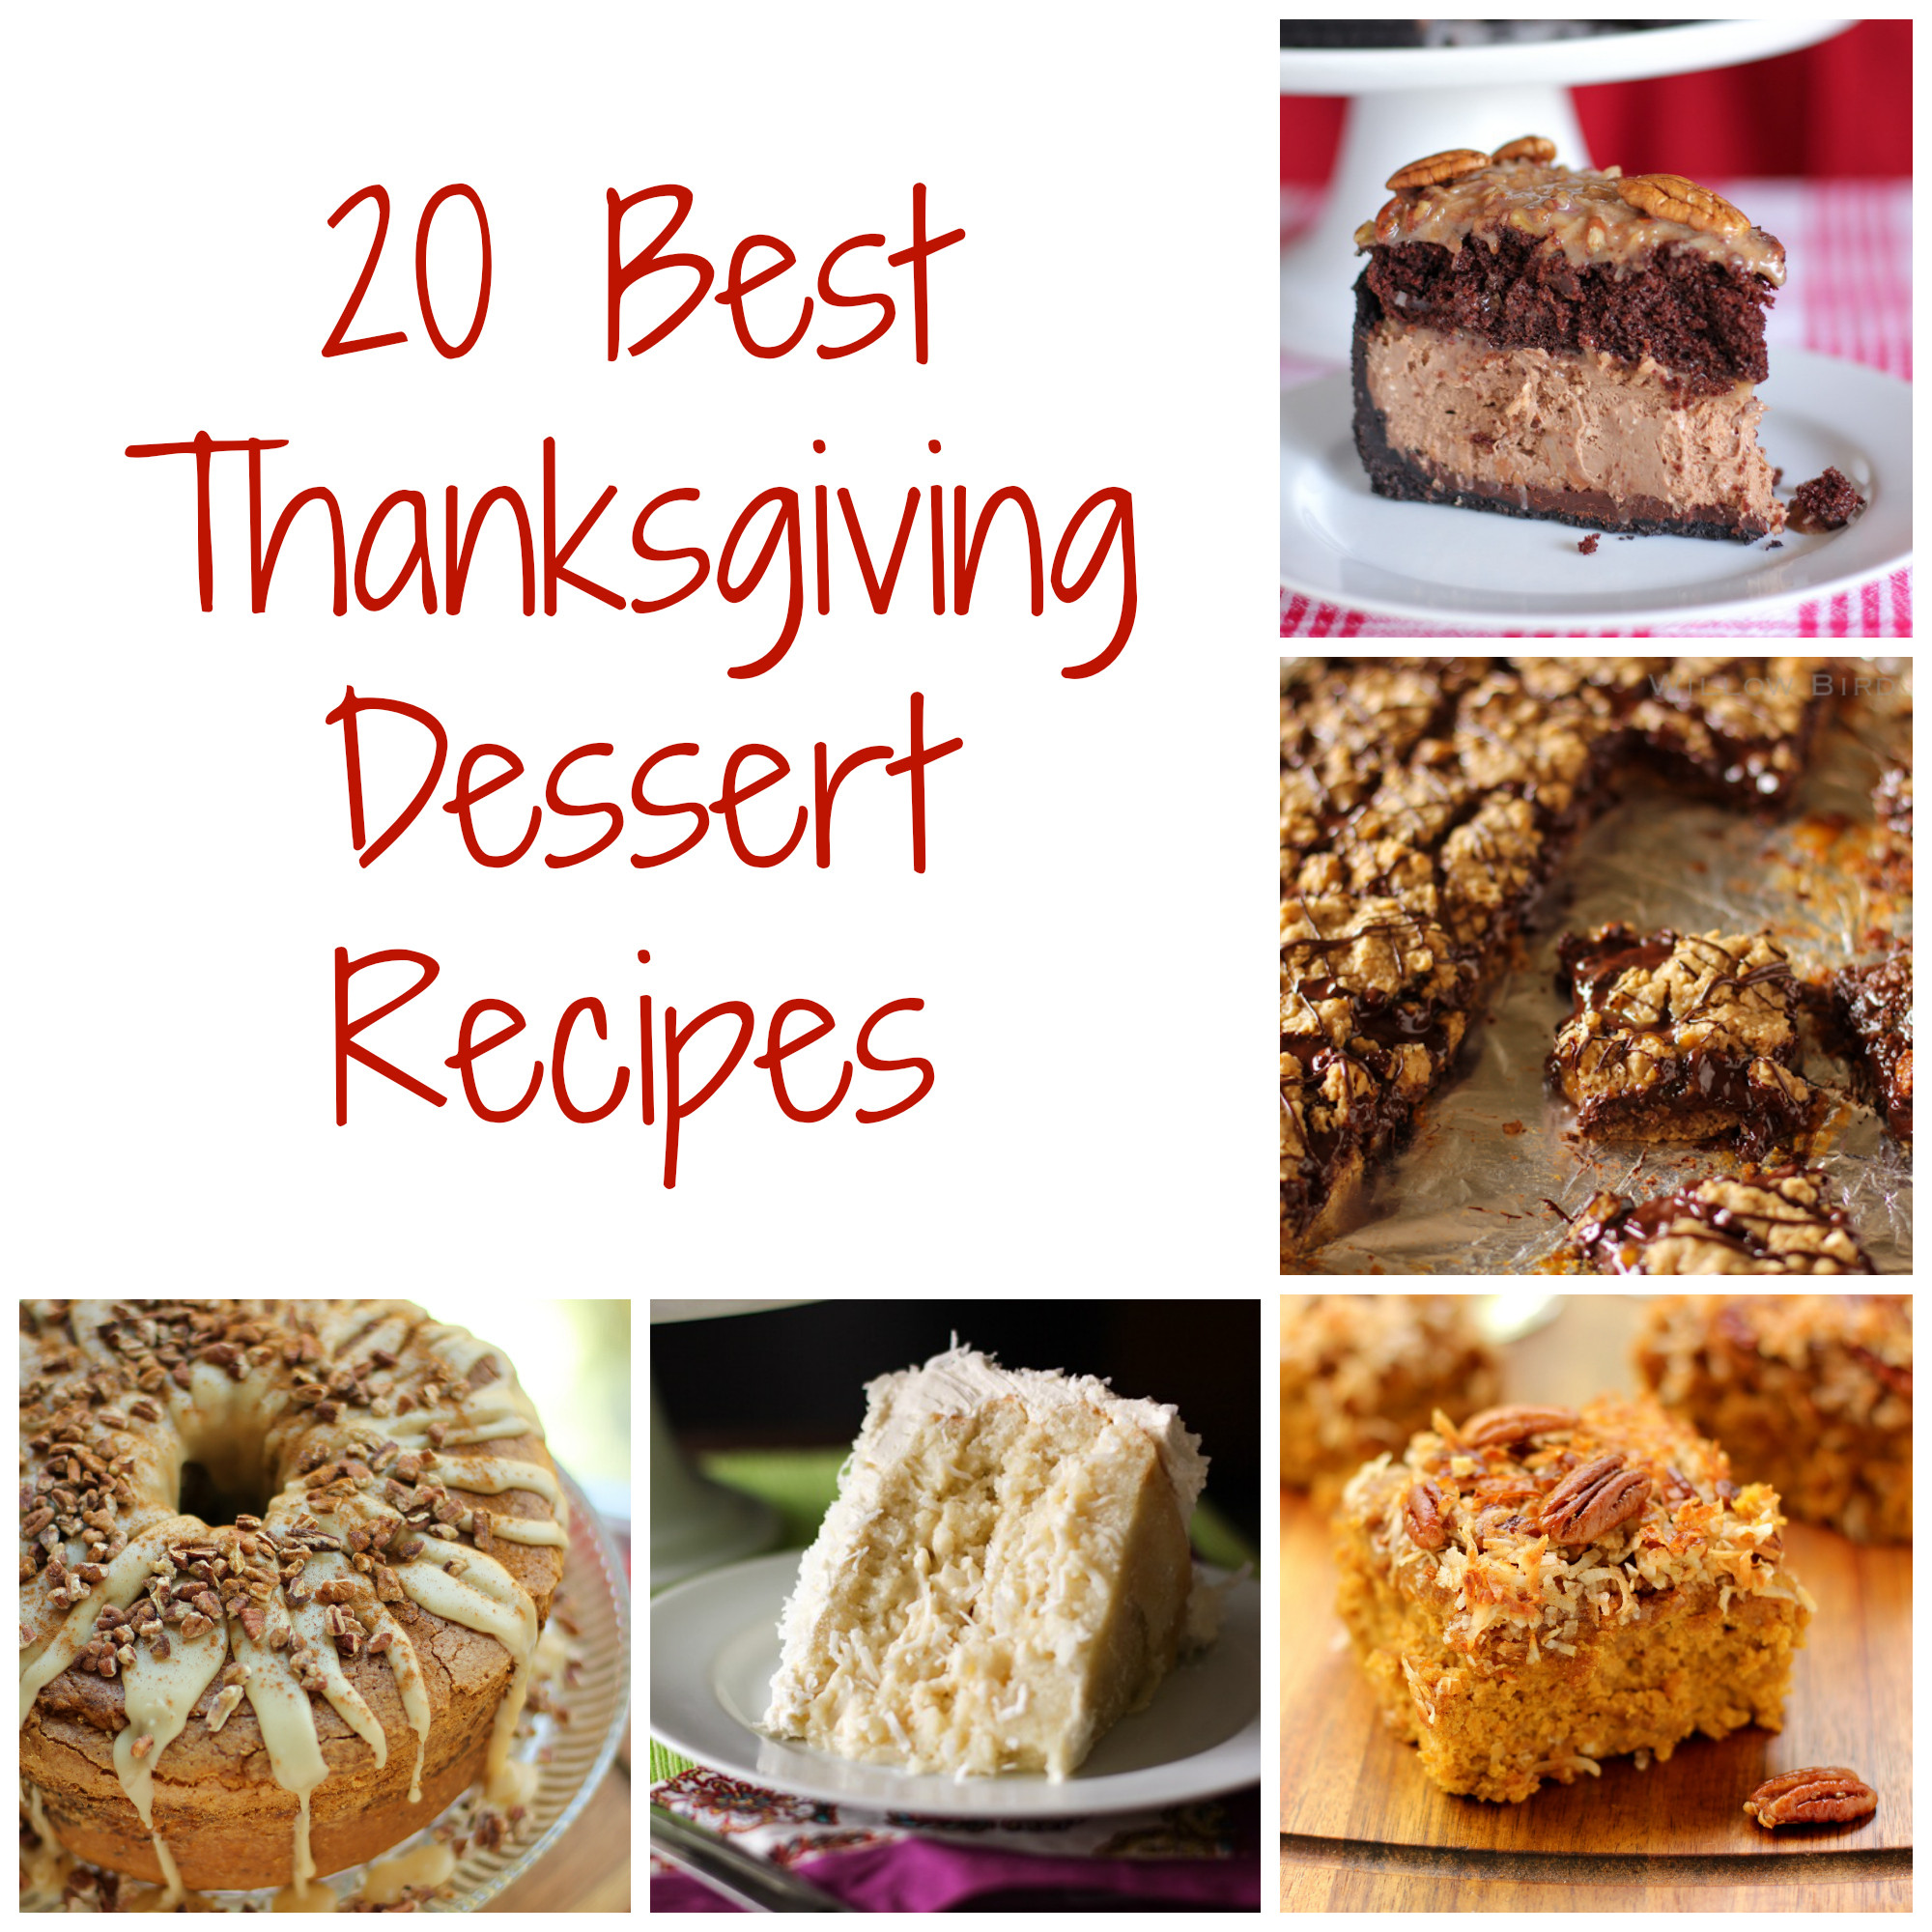 Best Thanksgiving Dessert Recipes
 Thanksgiving Dessert Recipes Willow Bird Baking